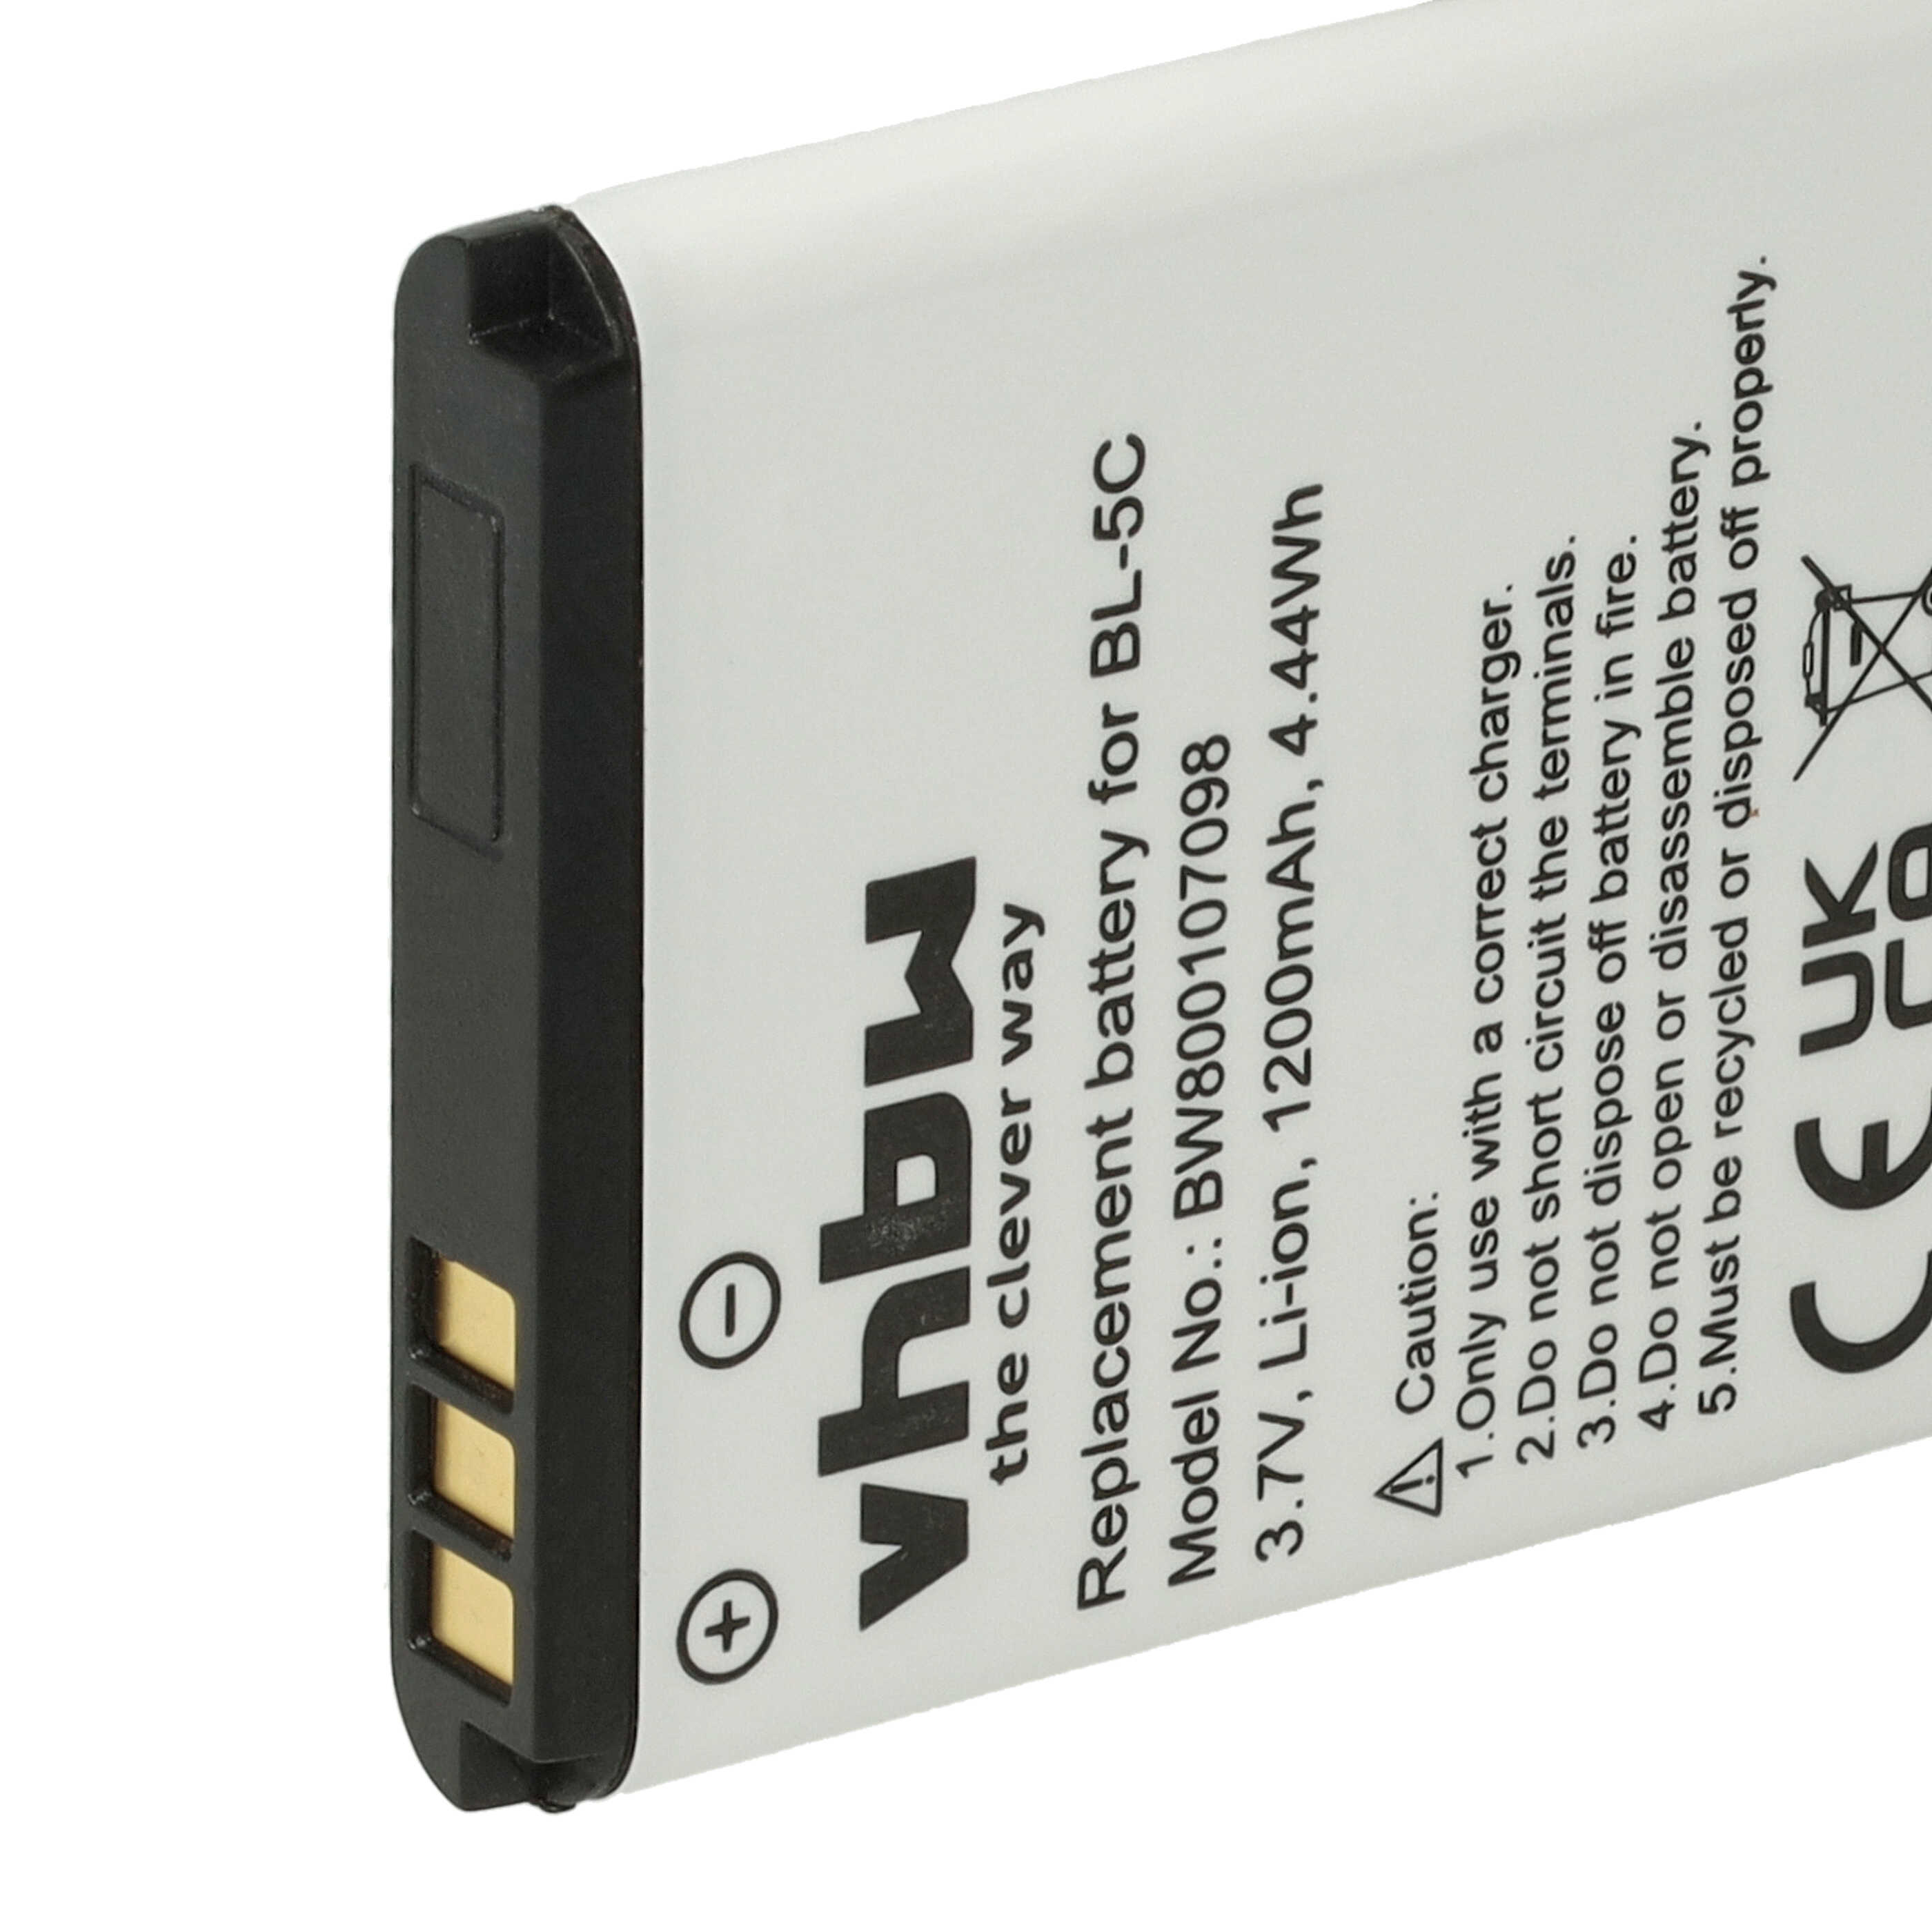 Batterie remplace Shoretel 300-1032, SH-10450, 10000058 pour téléphone - 1200mAh 3,7V Li-ion